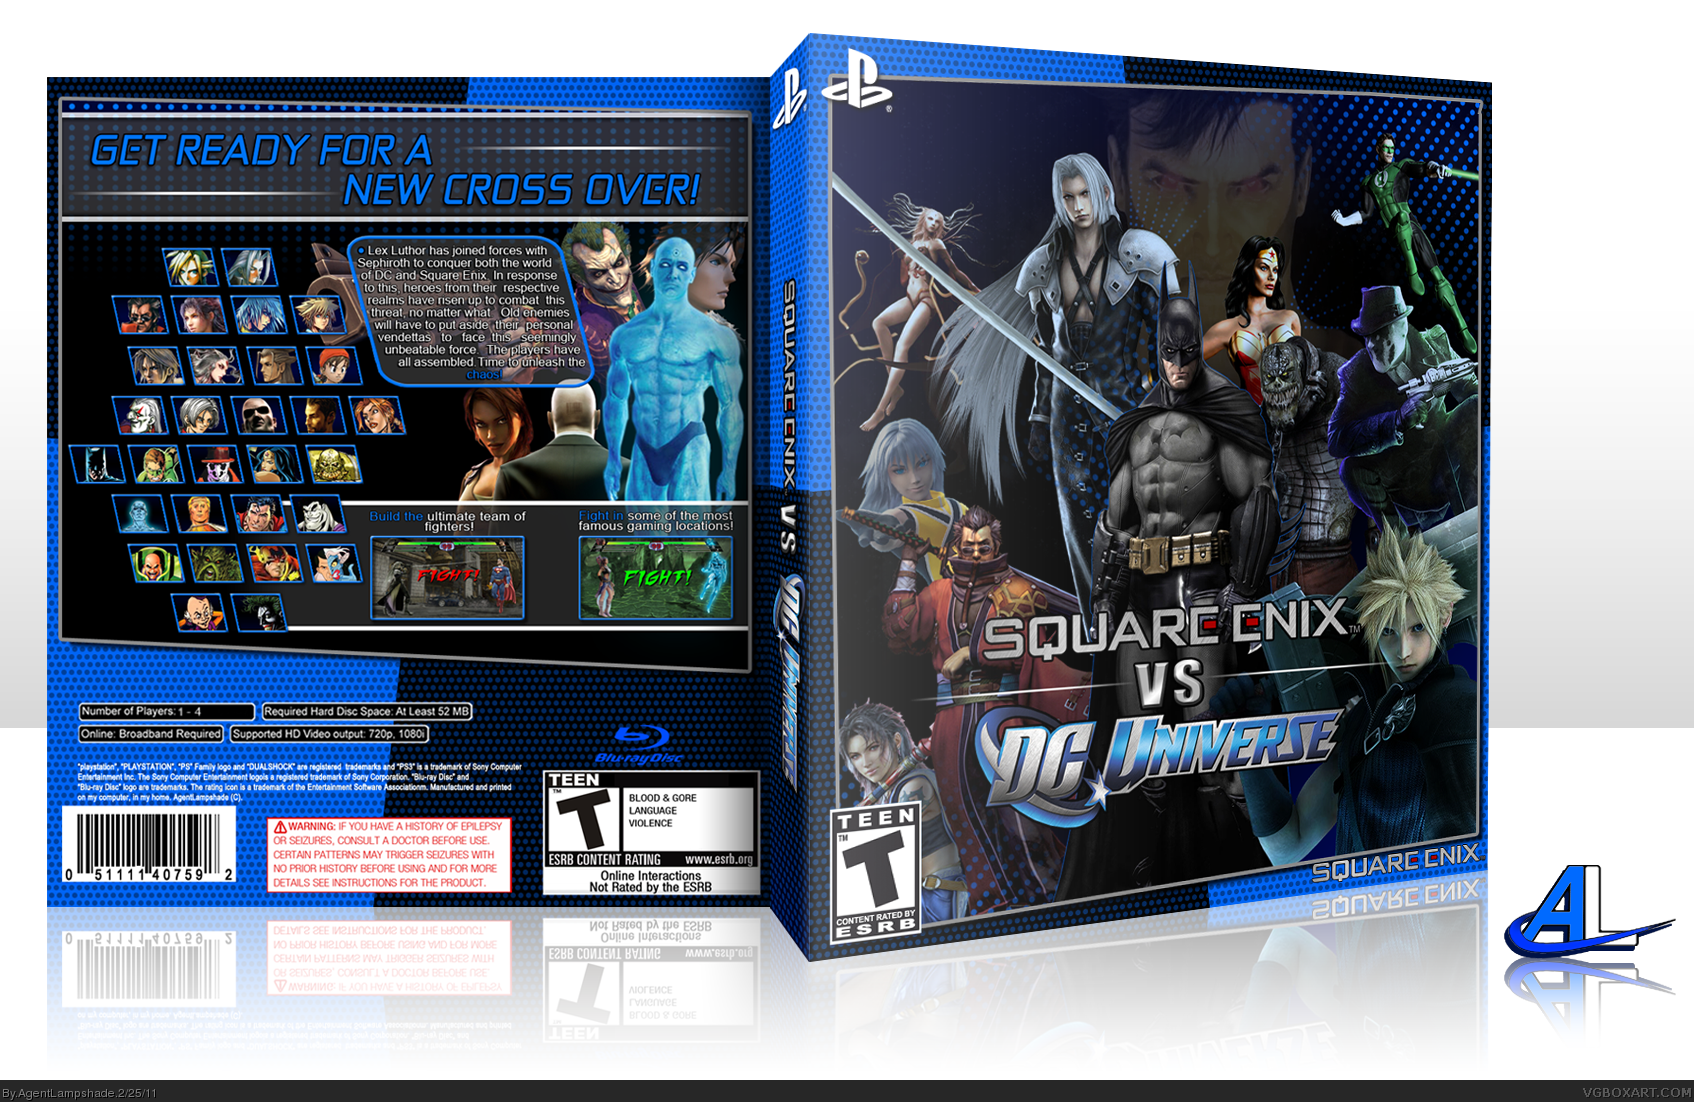 Square Enix Vs DC Universe box cover